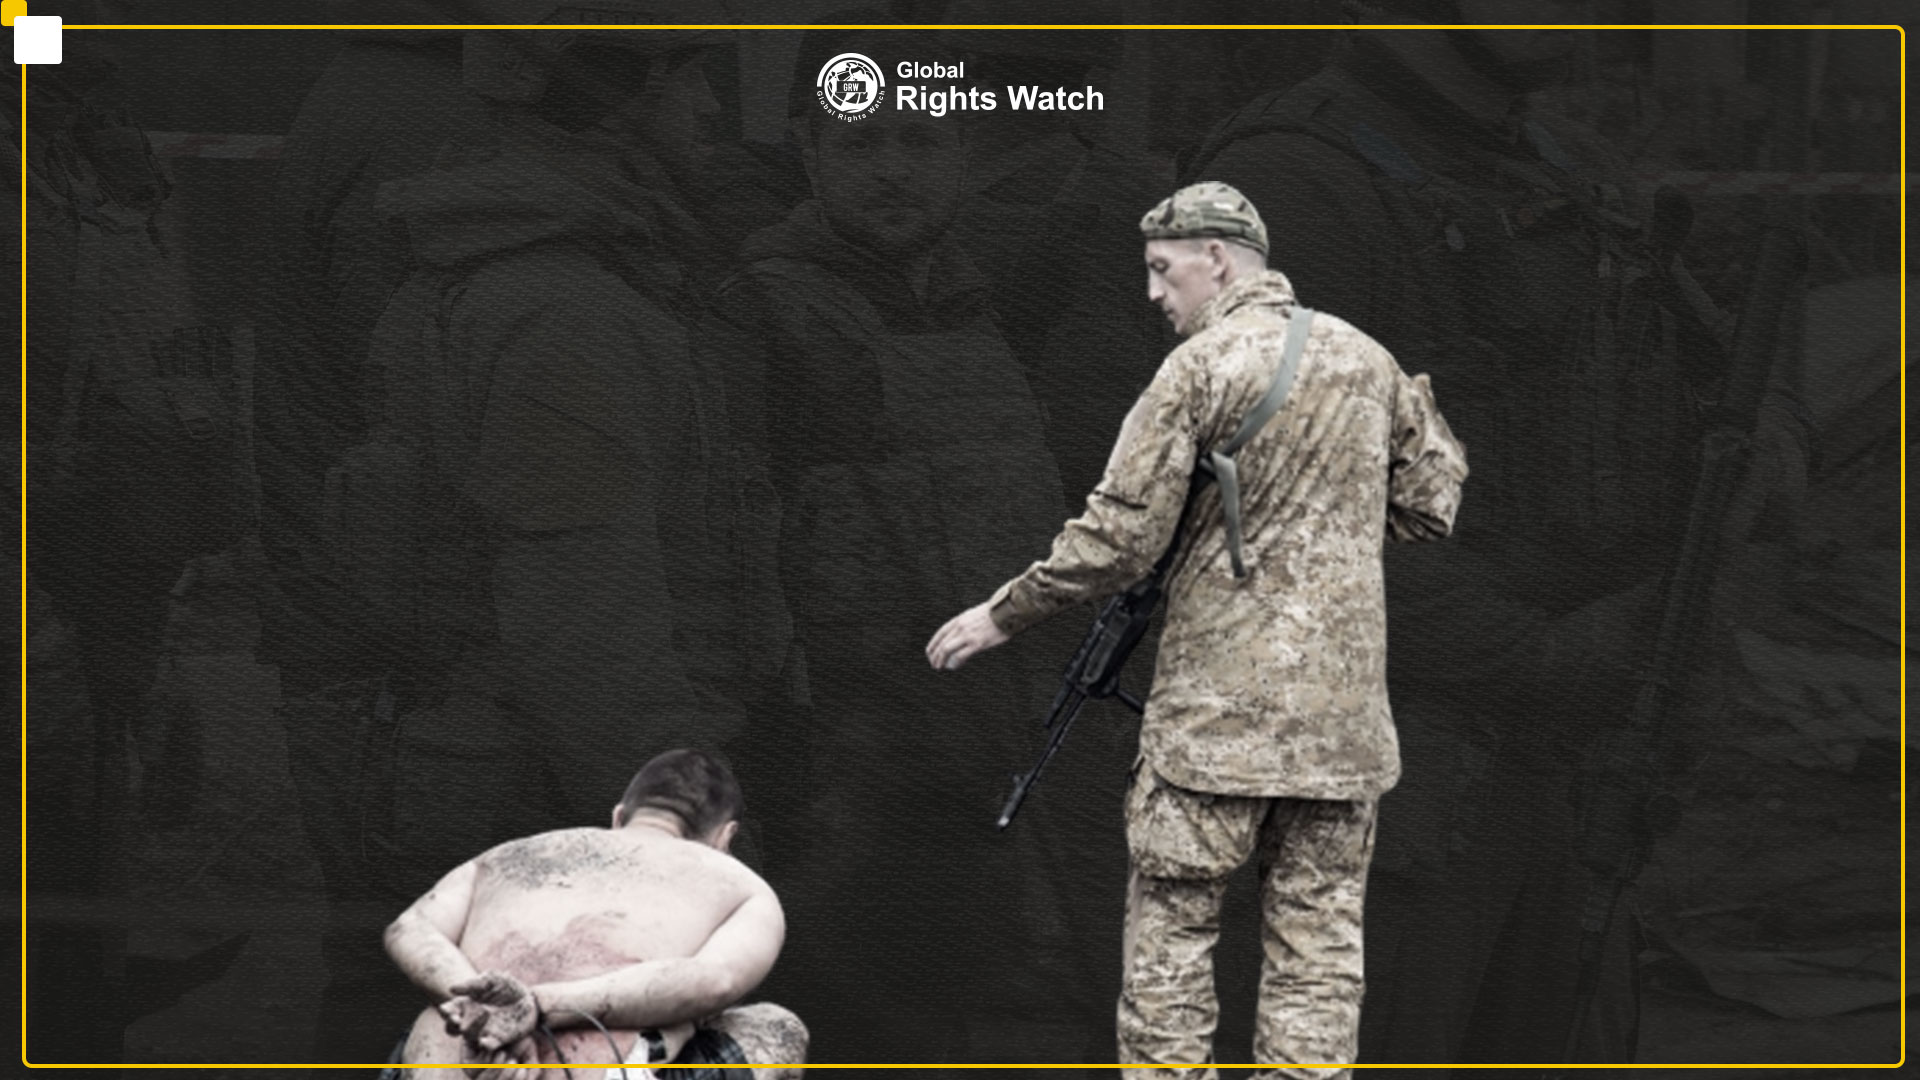 UN: Ukrainian Forces Torturing Russian Prisoners